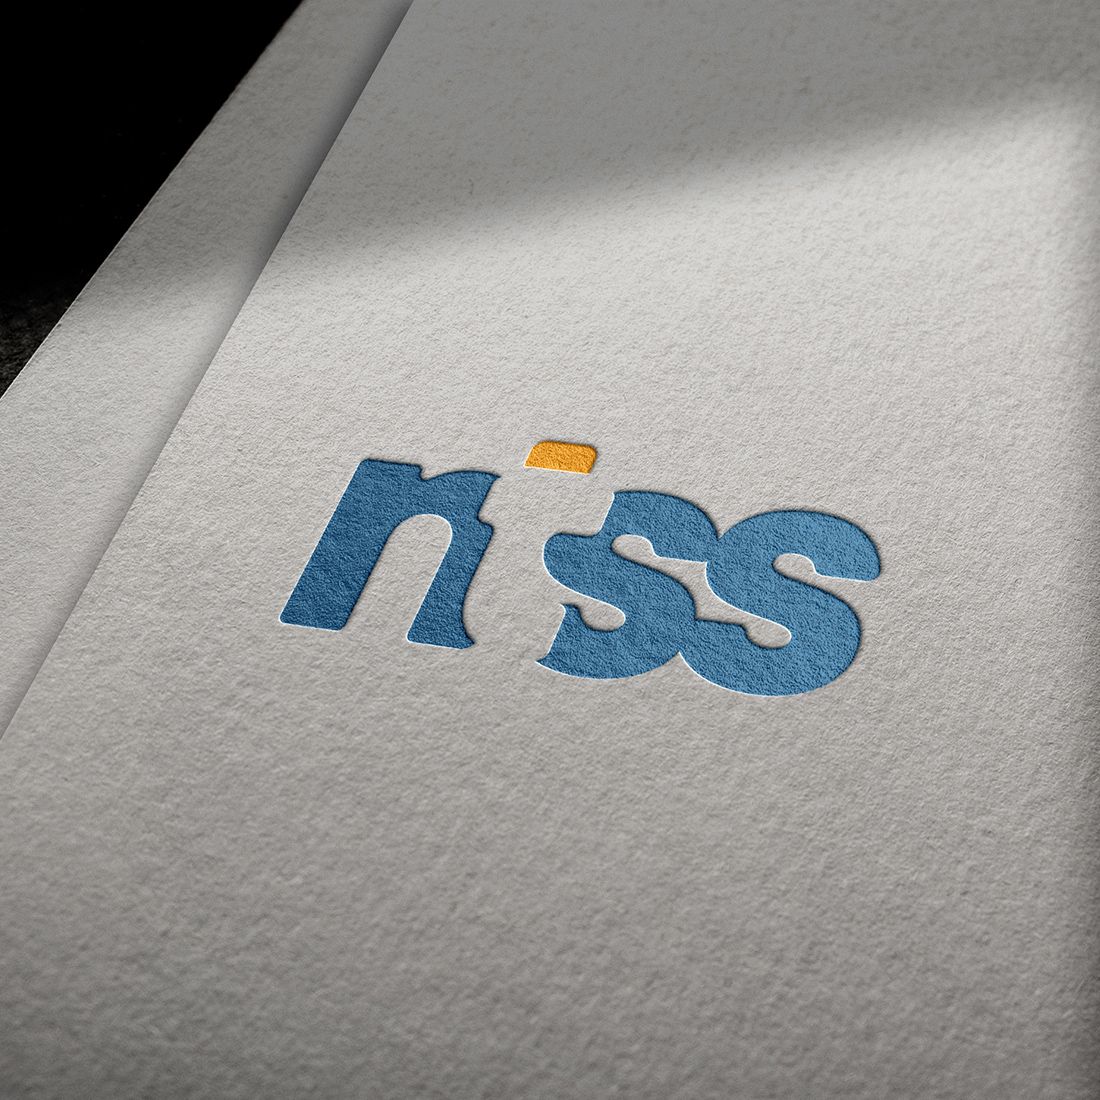 Ntss Letter Logo Design cover image.